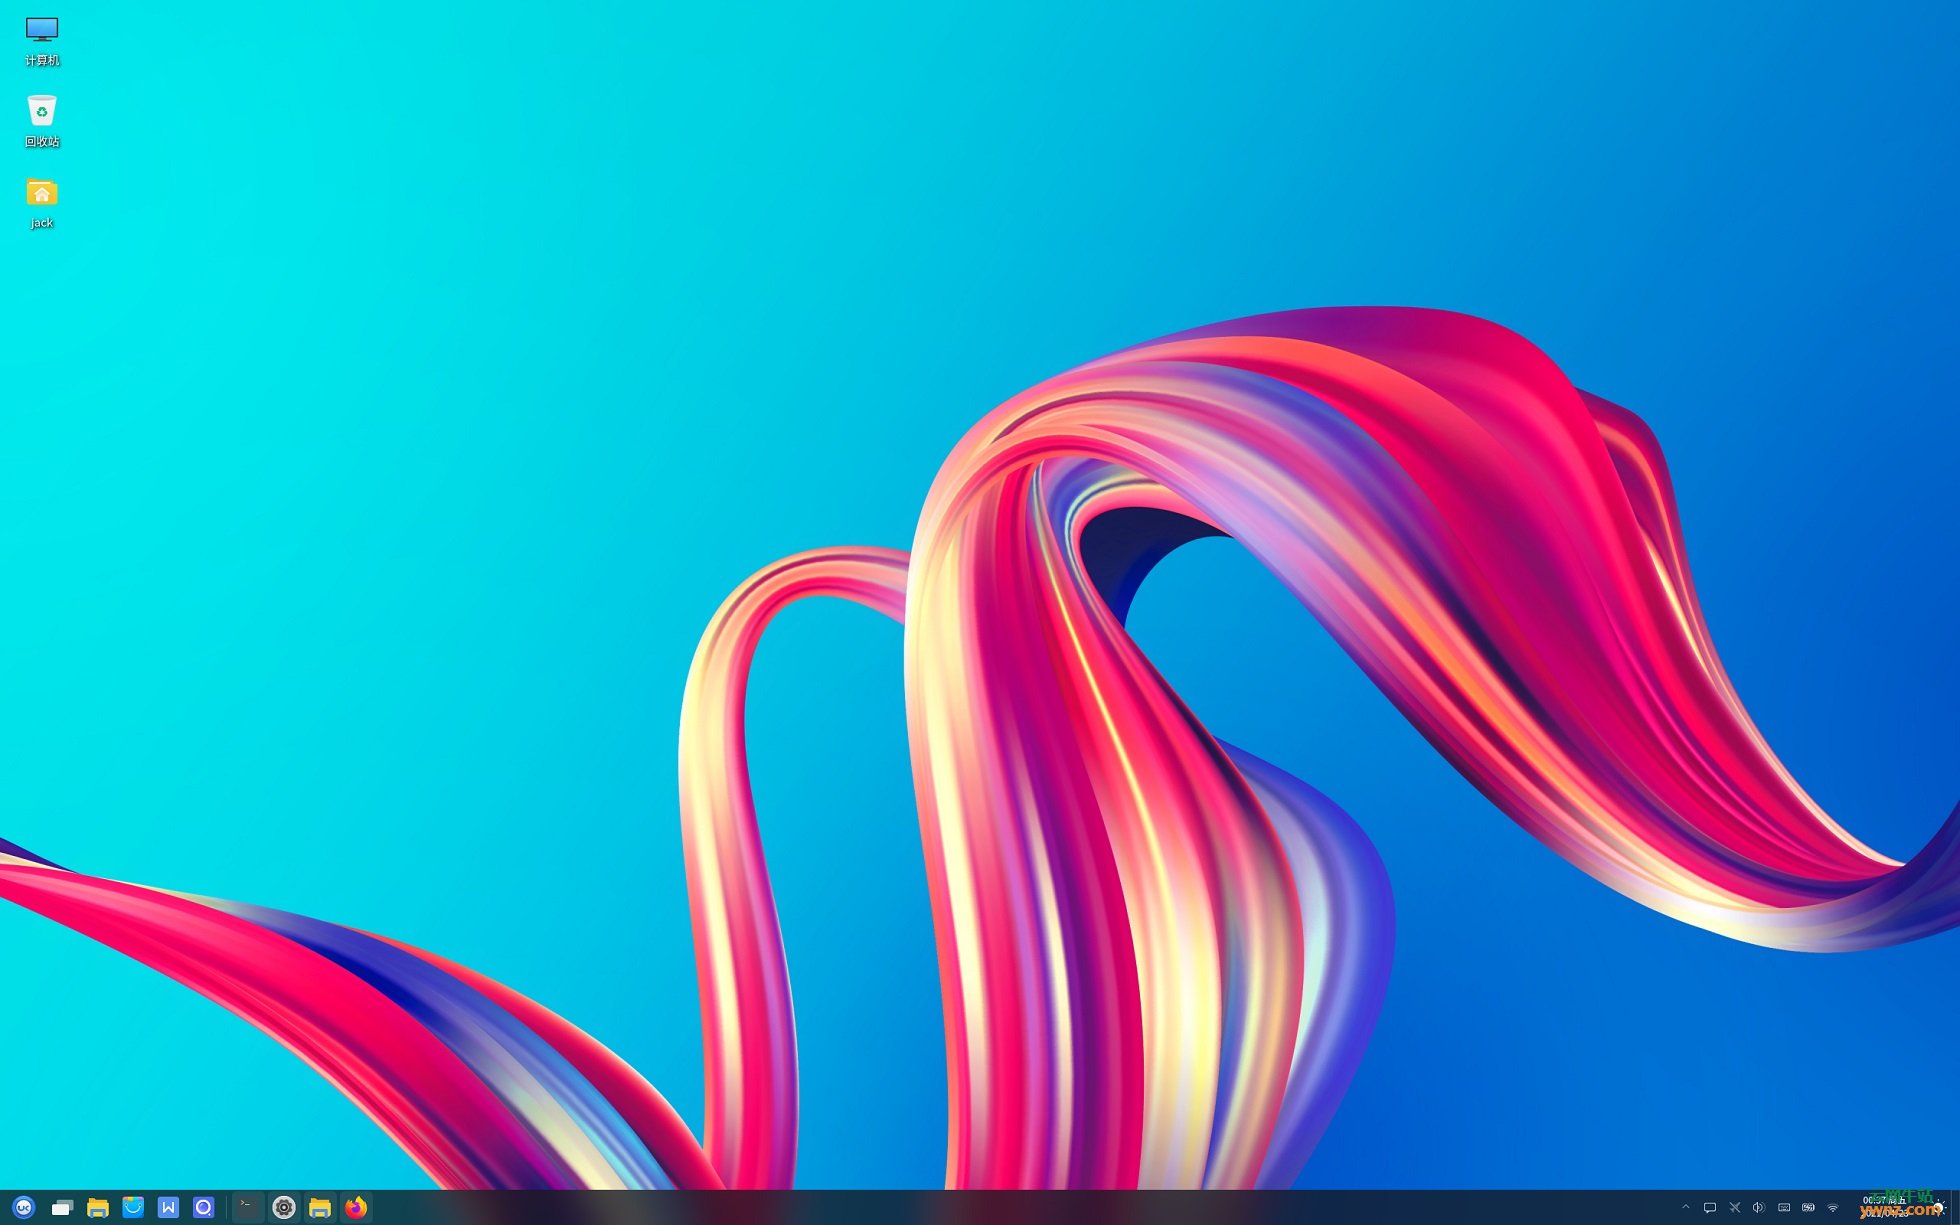 升级到优麒麟Ubuntu Kylin 20.04 LTS Pro系统版本的命令